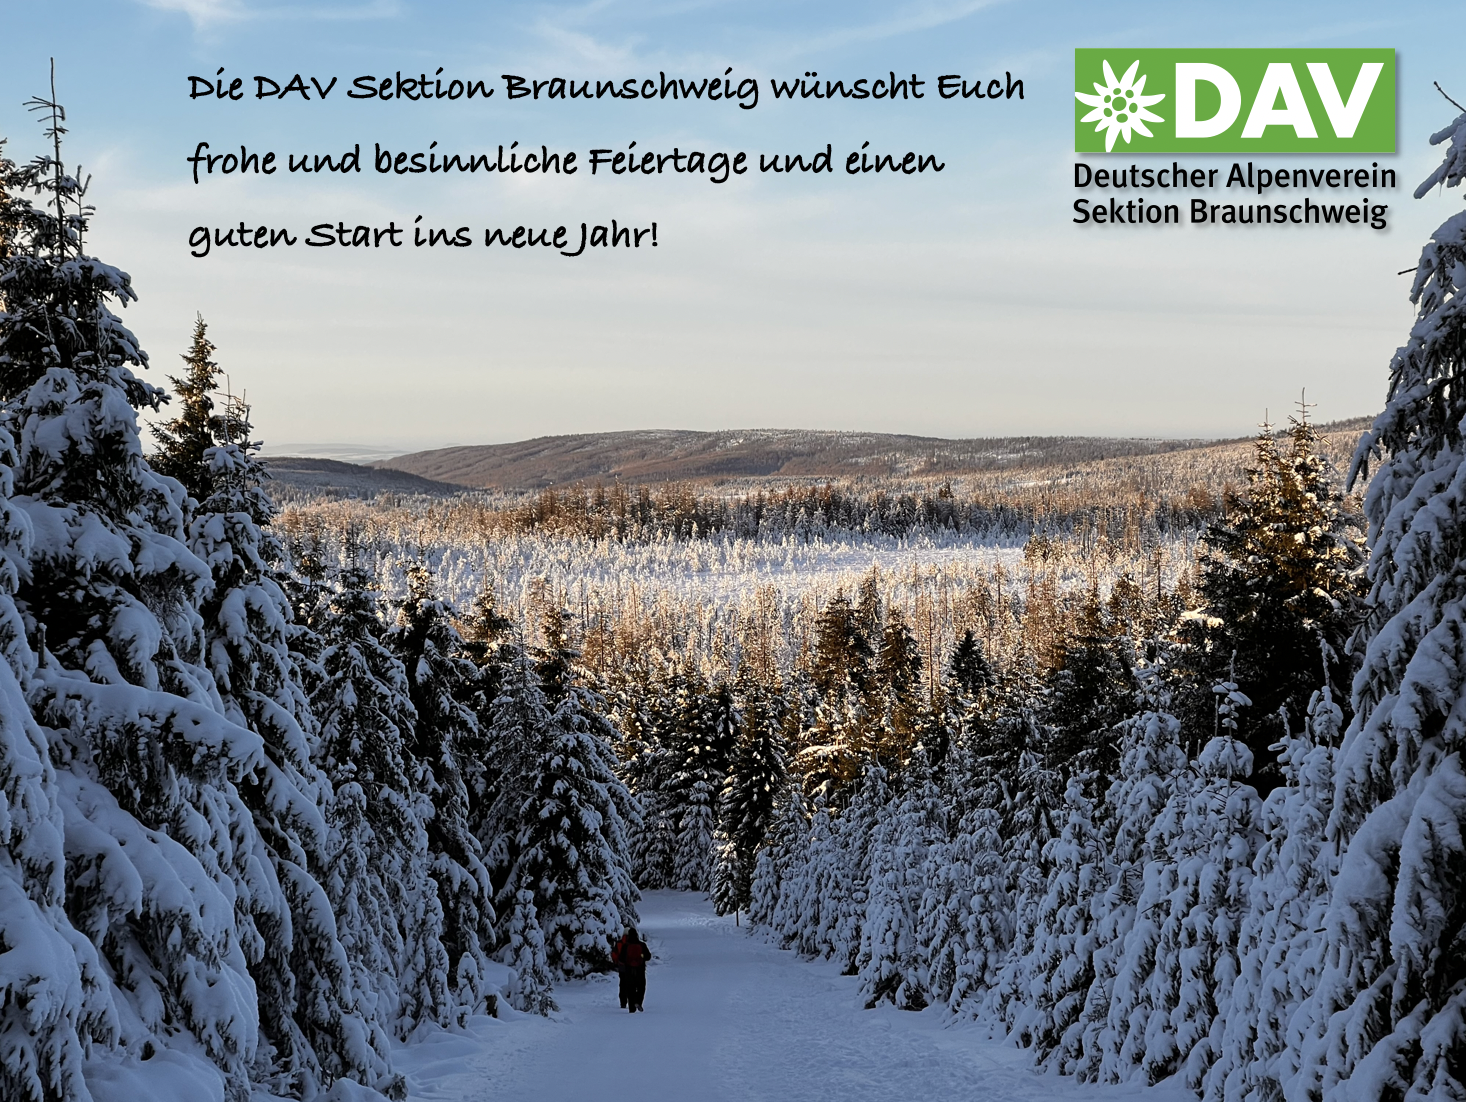 Die DAV Sektion Braunschweig wünscht euch frohe und besinnliche Feiertage und einen guten Rutsch ins neue Jahr.